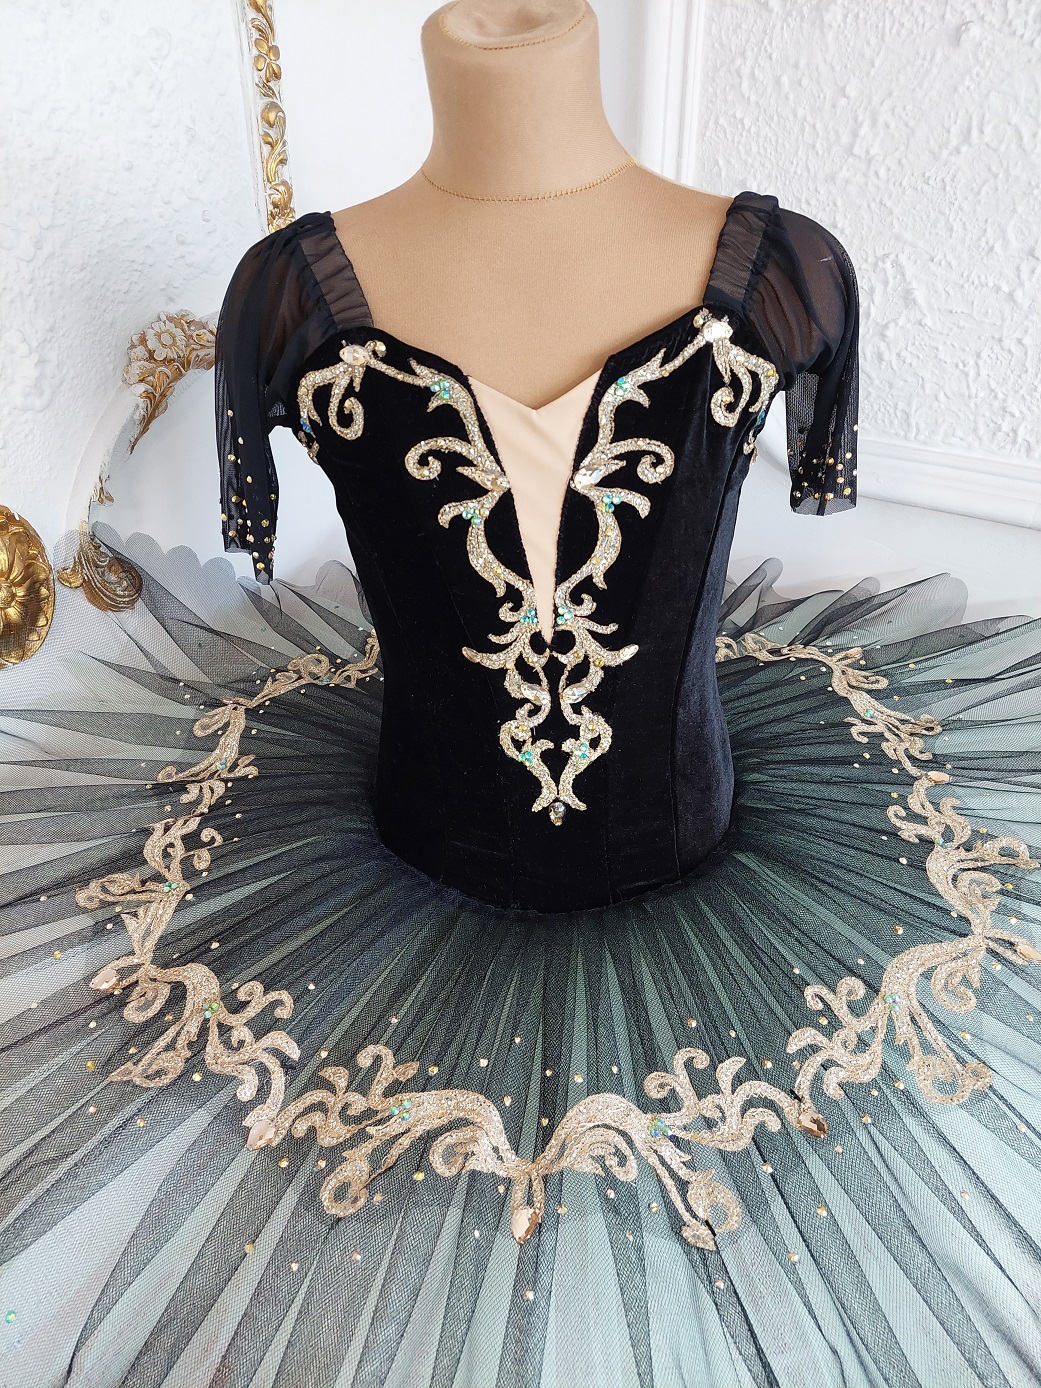 classical ballet tutu esmeralda